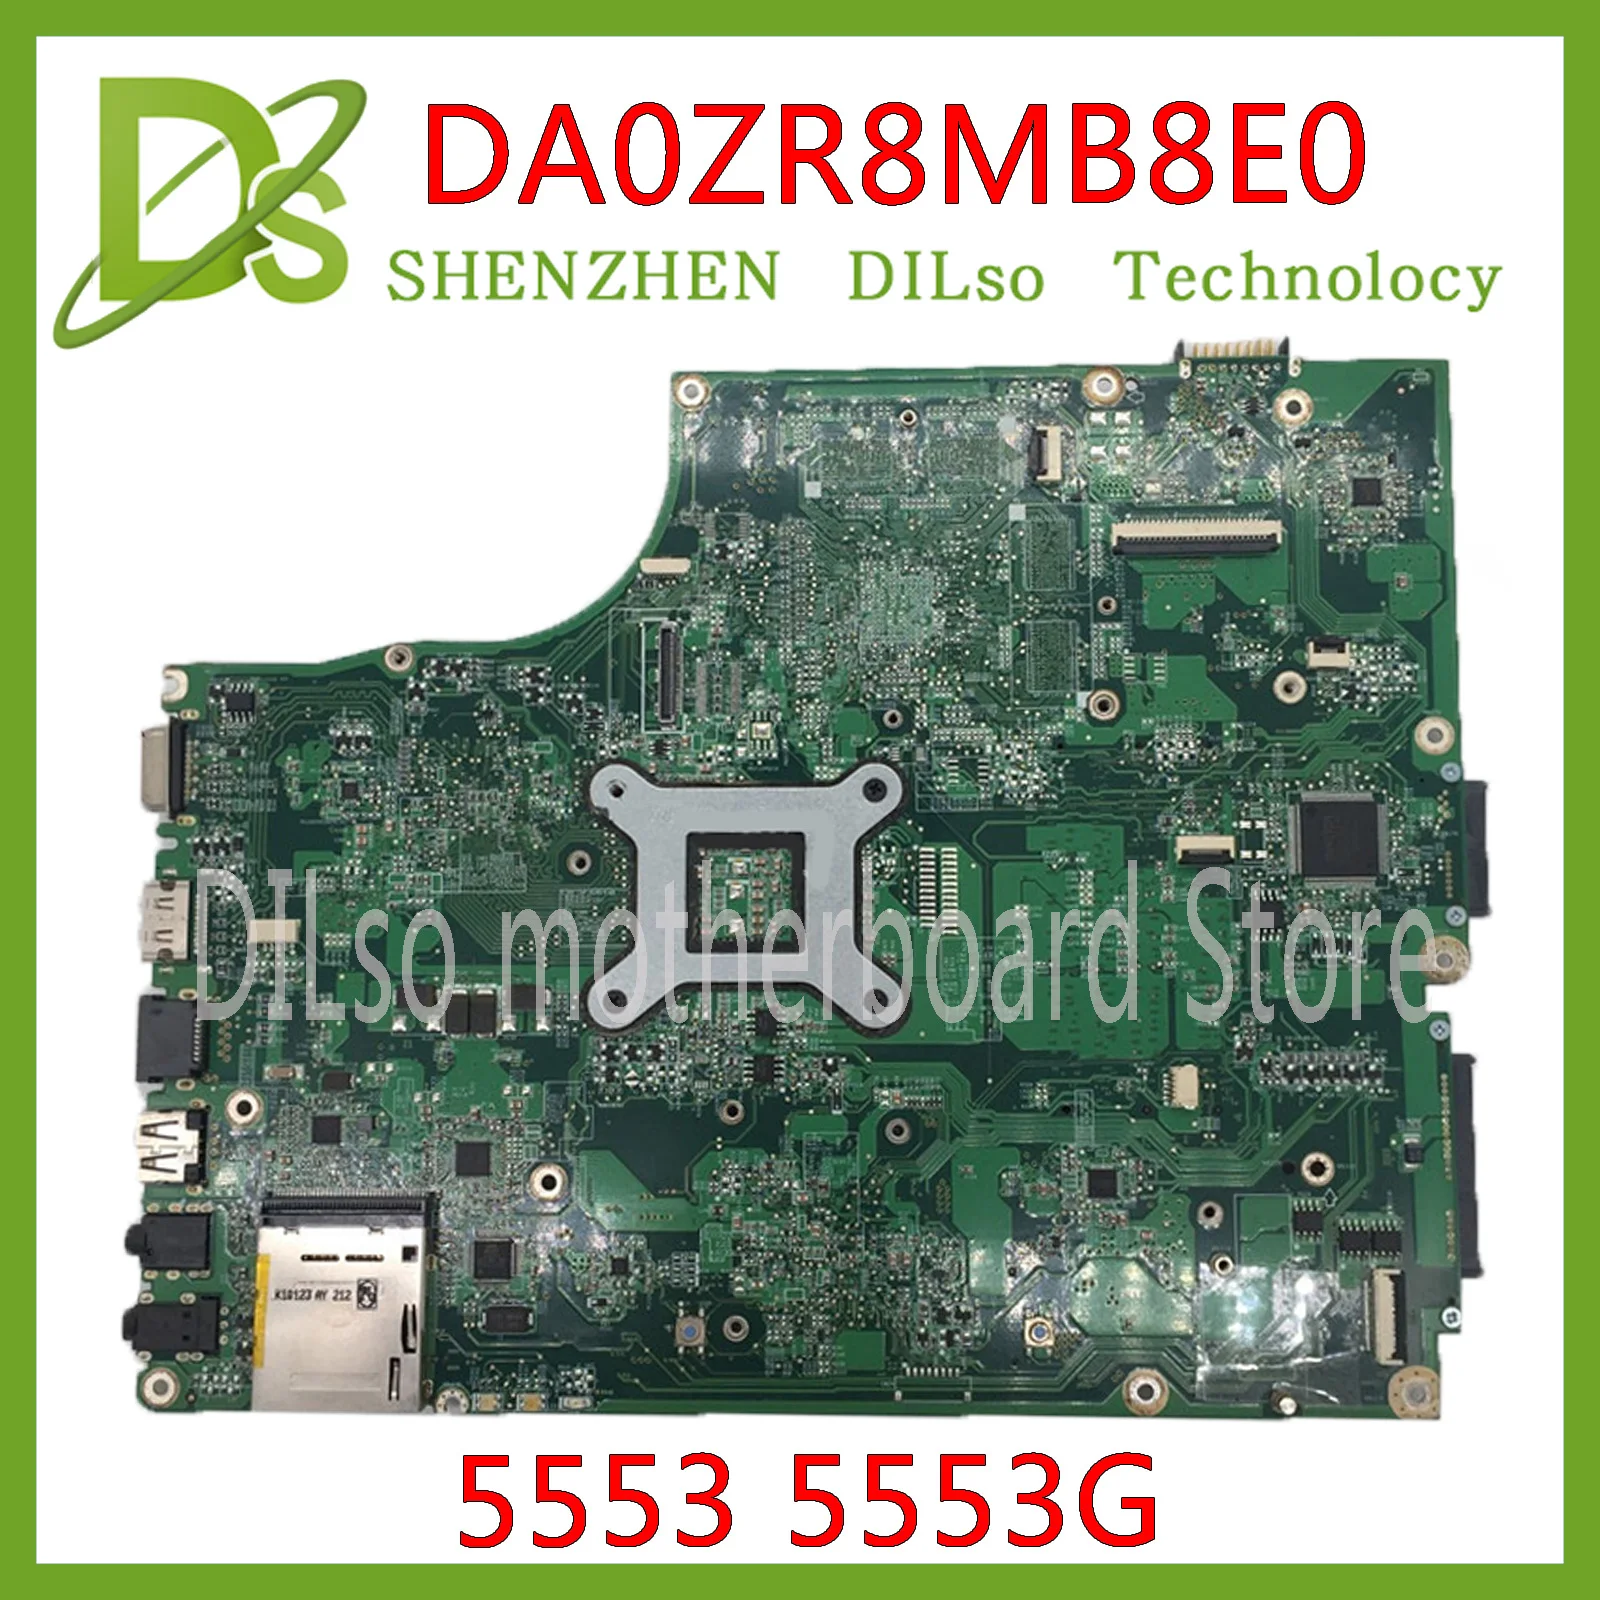 

KEFU DA0ZR8MB8E0 MBPV606001 Mainboard For Acer aspire 5553 5553G Laptop Motherboard GM MB.PU906.001 Test work 100% original